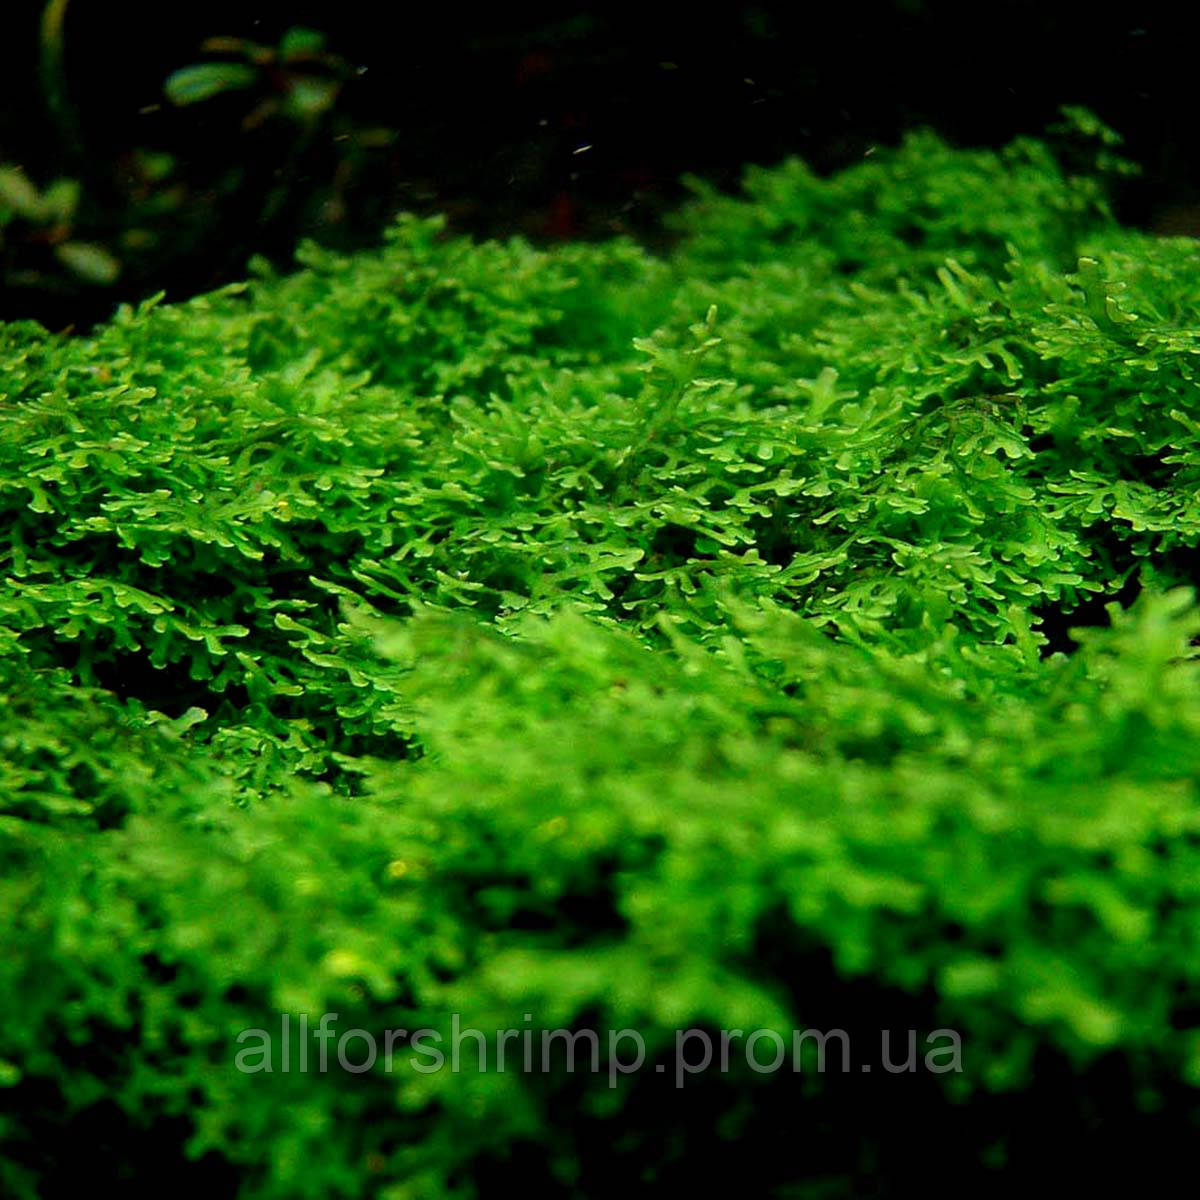 Мох Риккардия / Riccardia chamedryfolia (Coral moss), порция 3х3 см.